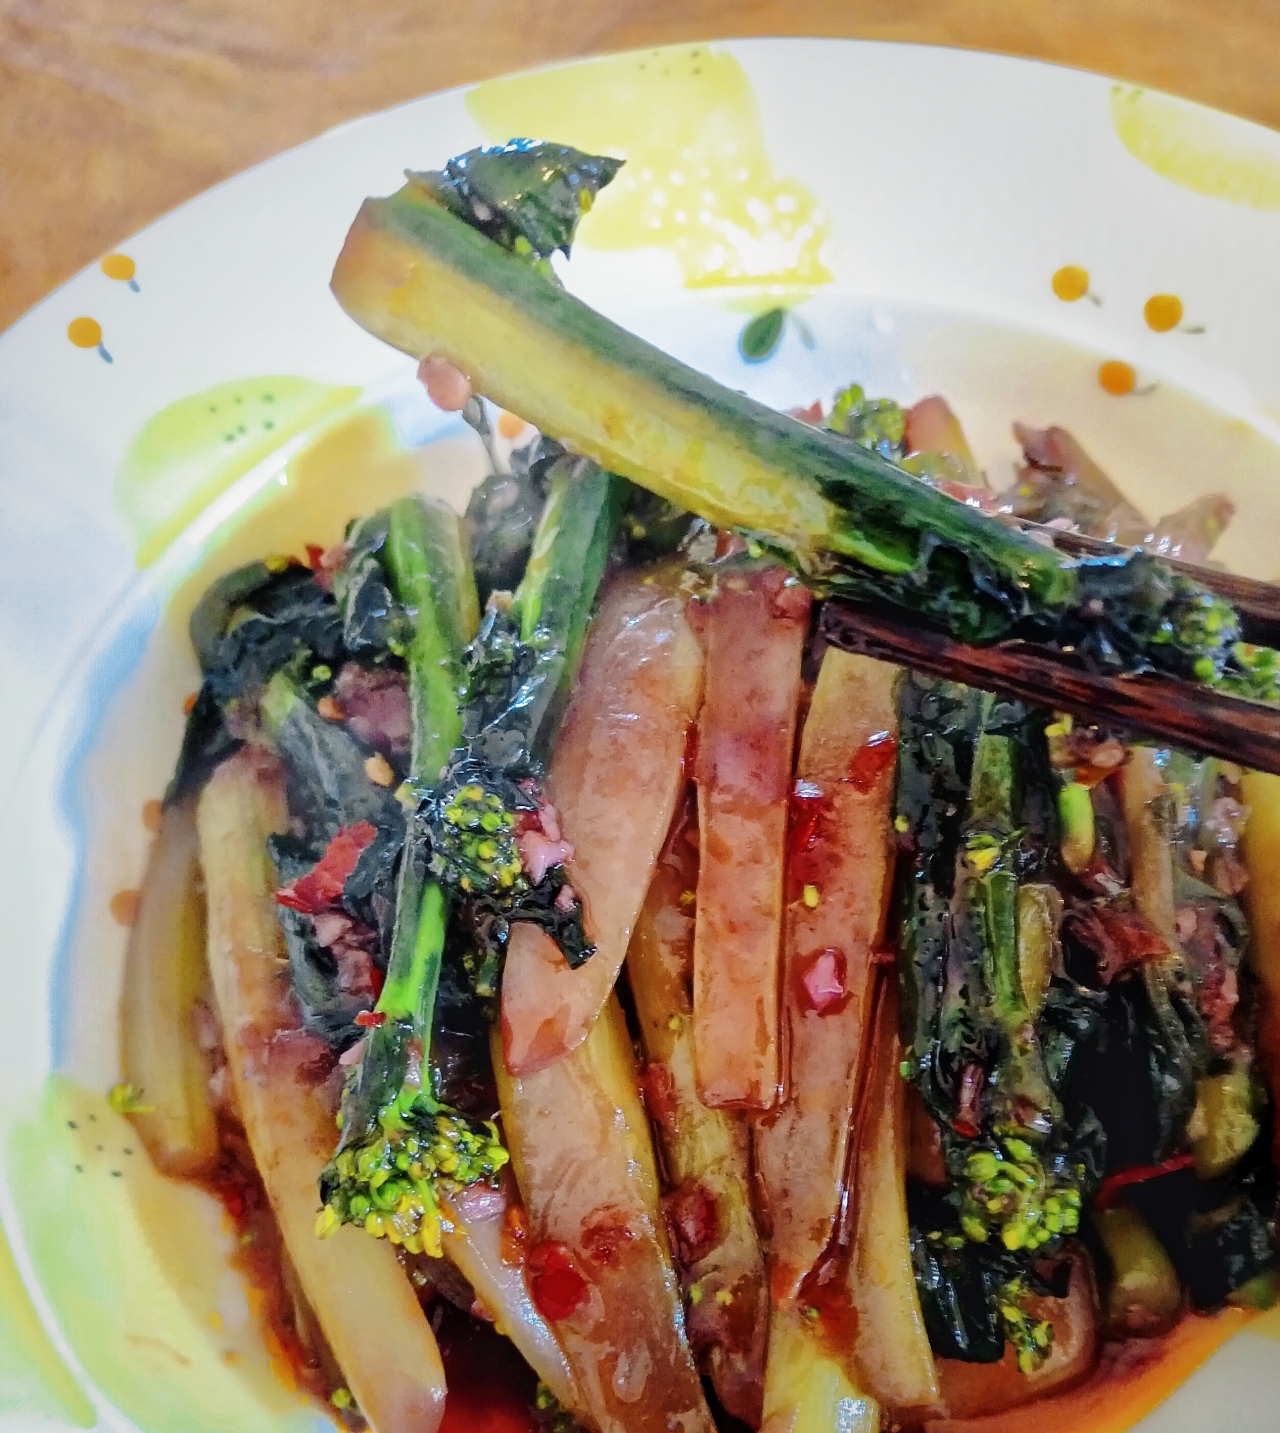 鱼香油菜苔